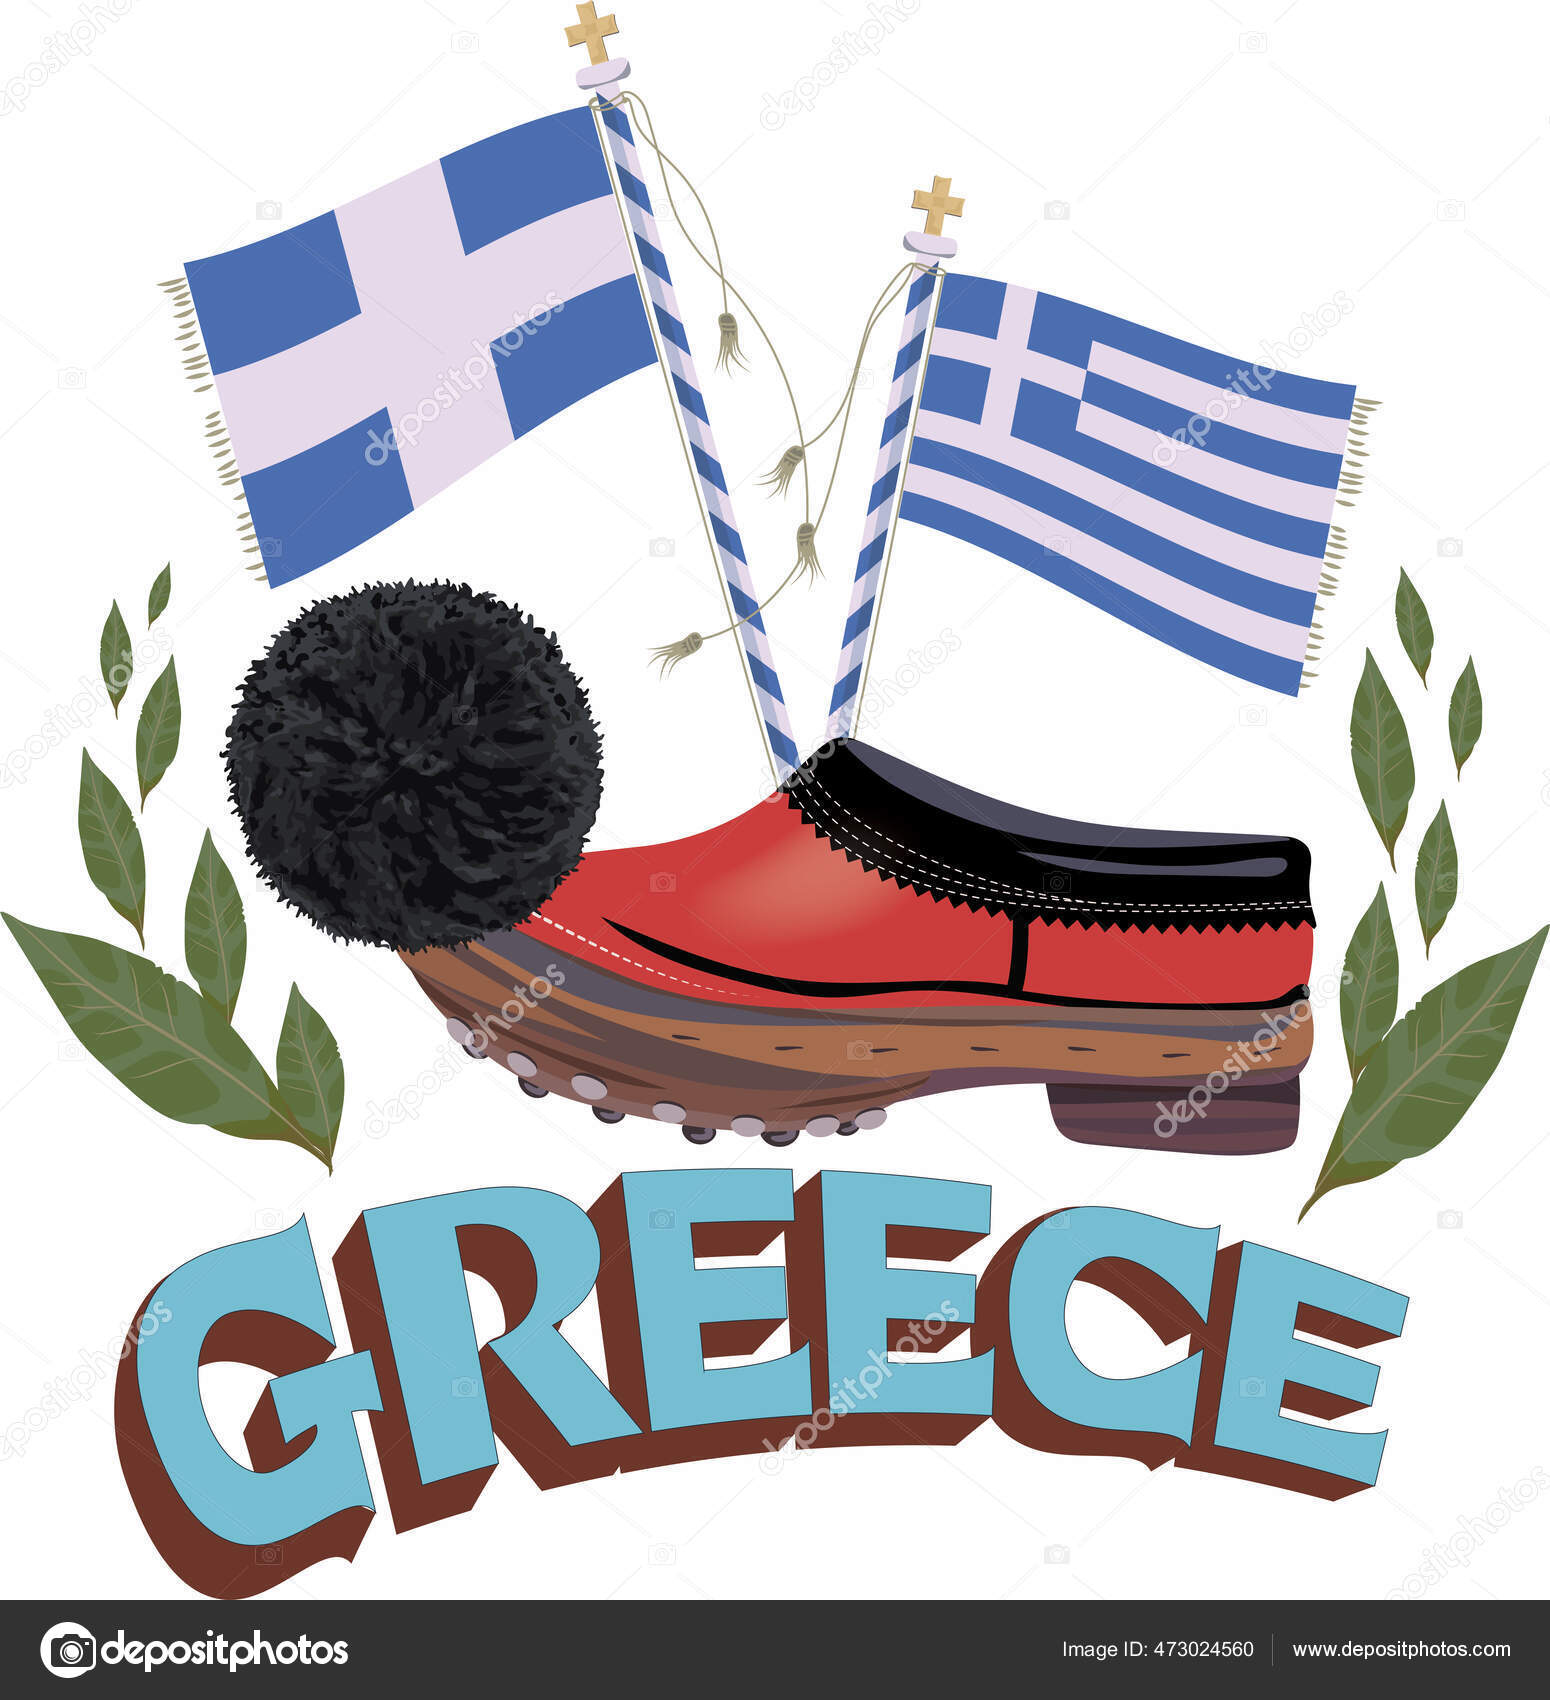 Griechenland Flagge Fahne griechisch | Poster